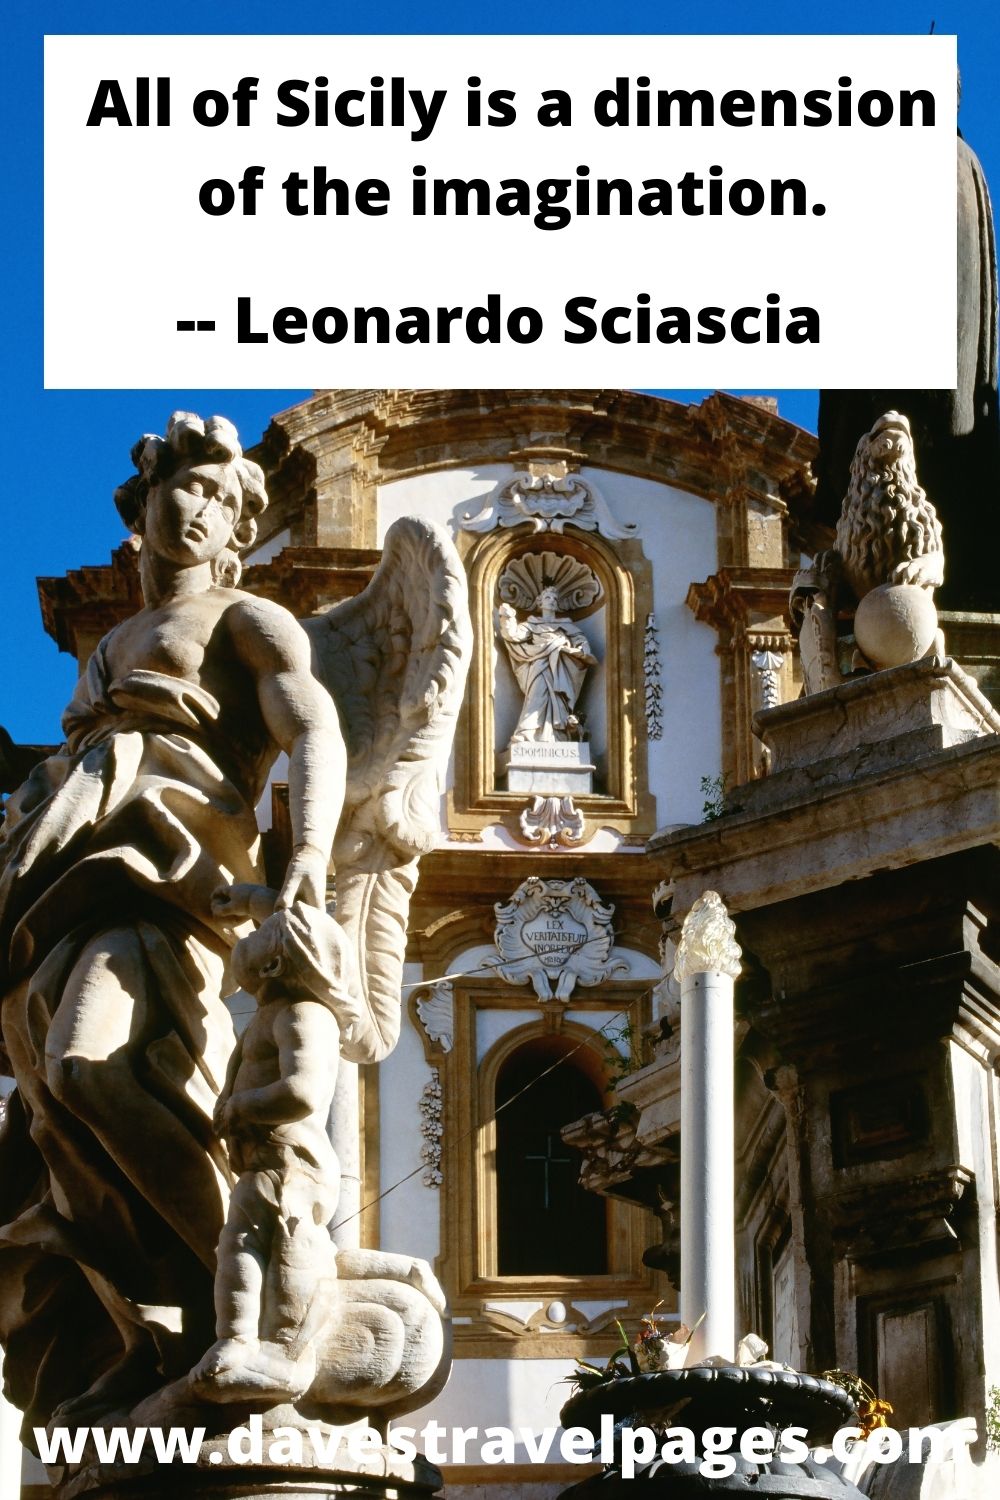 All of Sicily is a dimension of the imagination. - Leonardo Sciascia quote